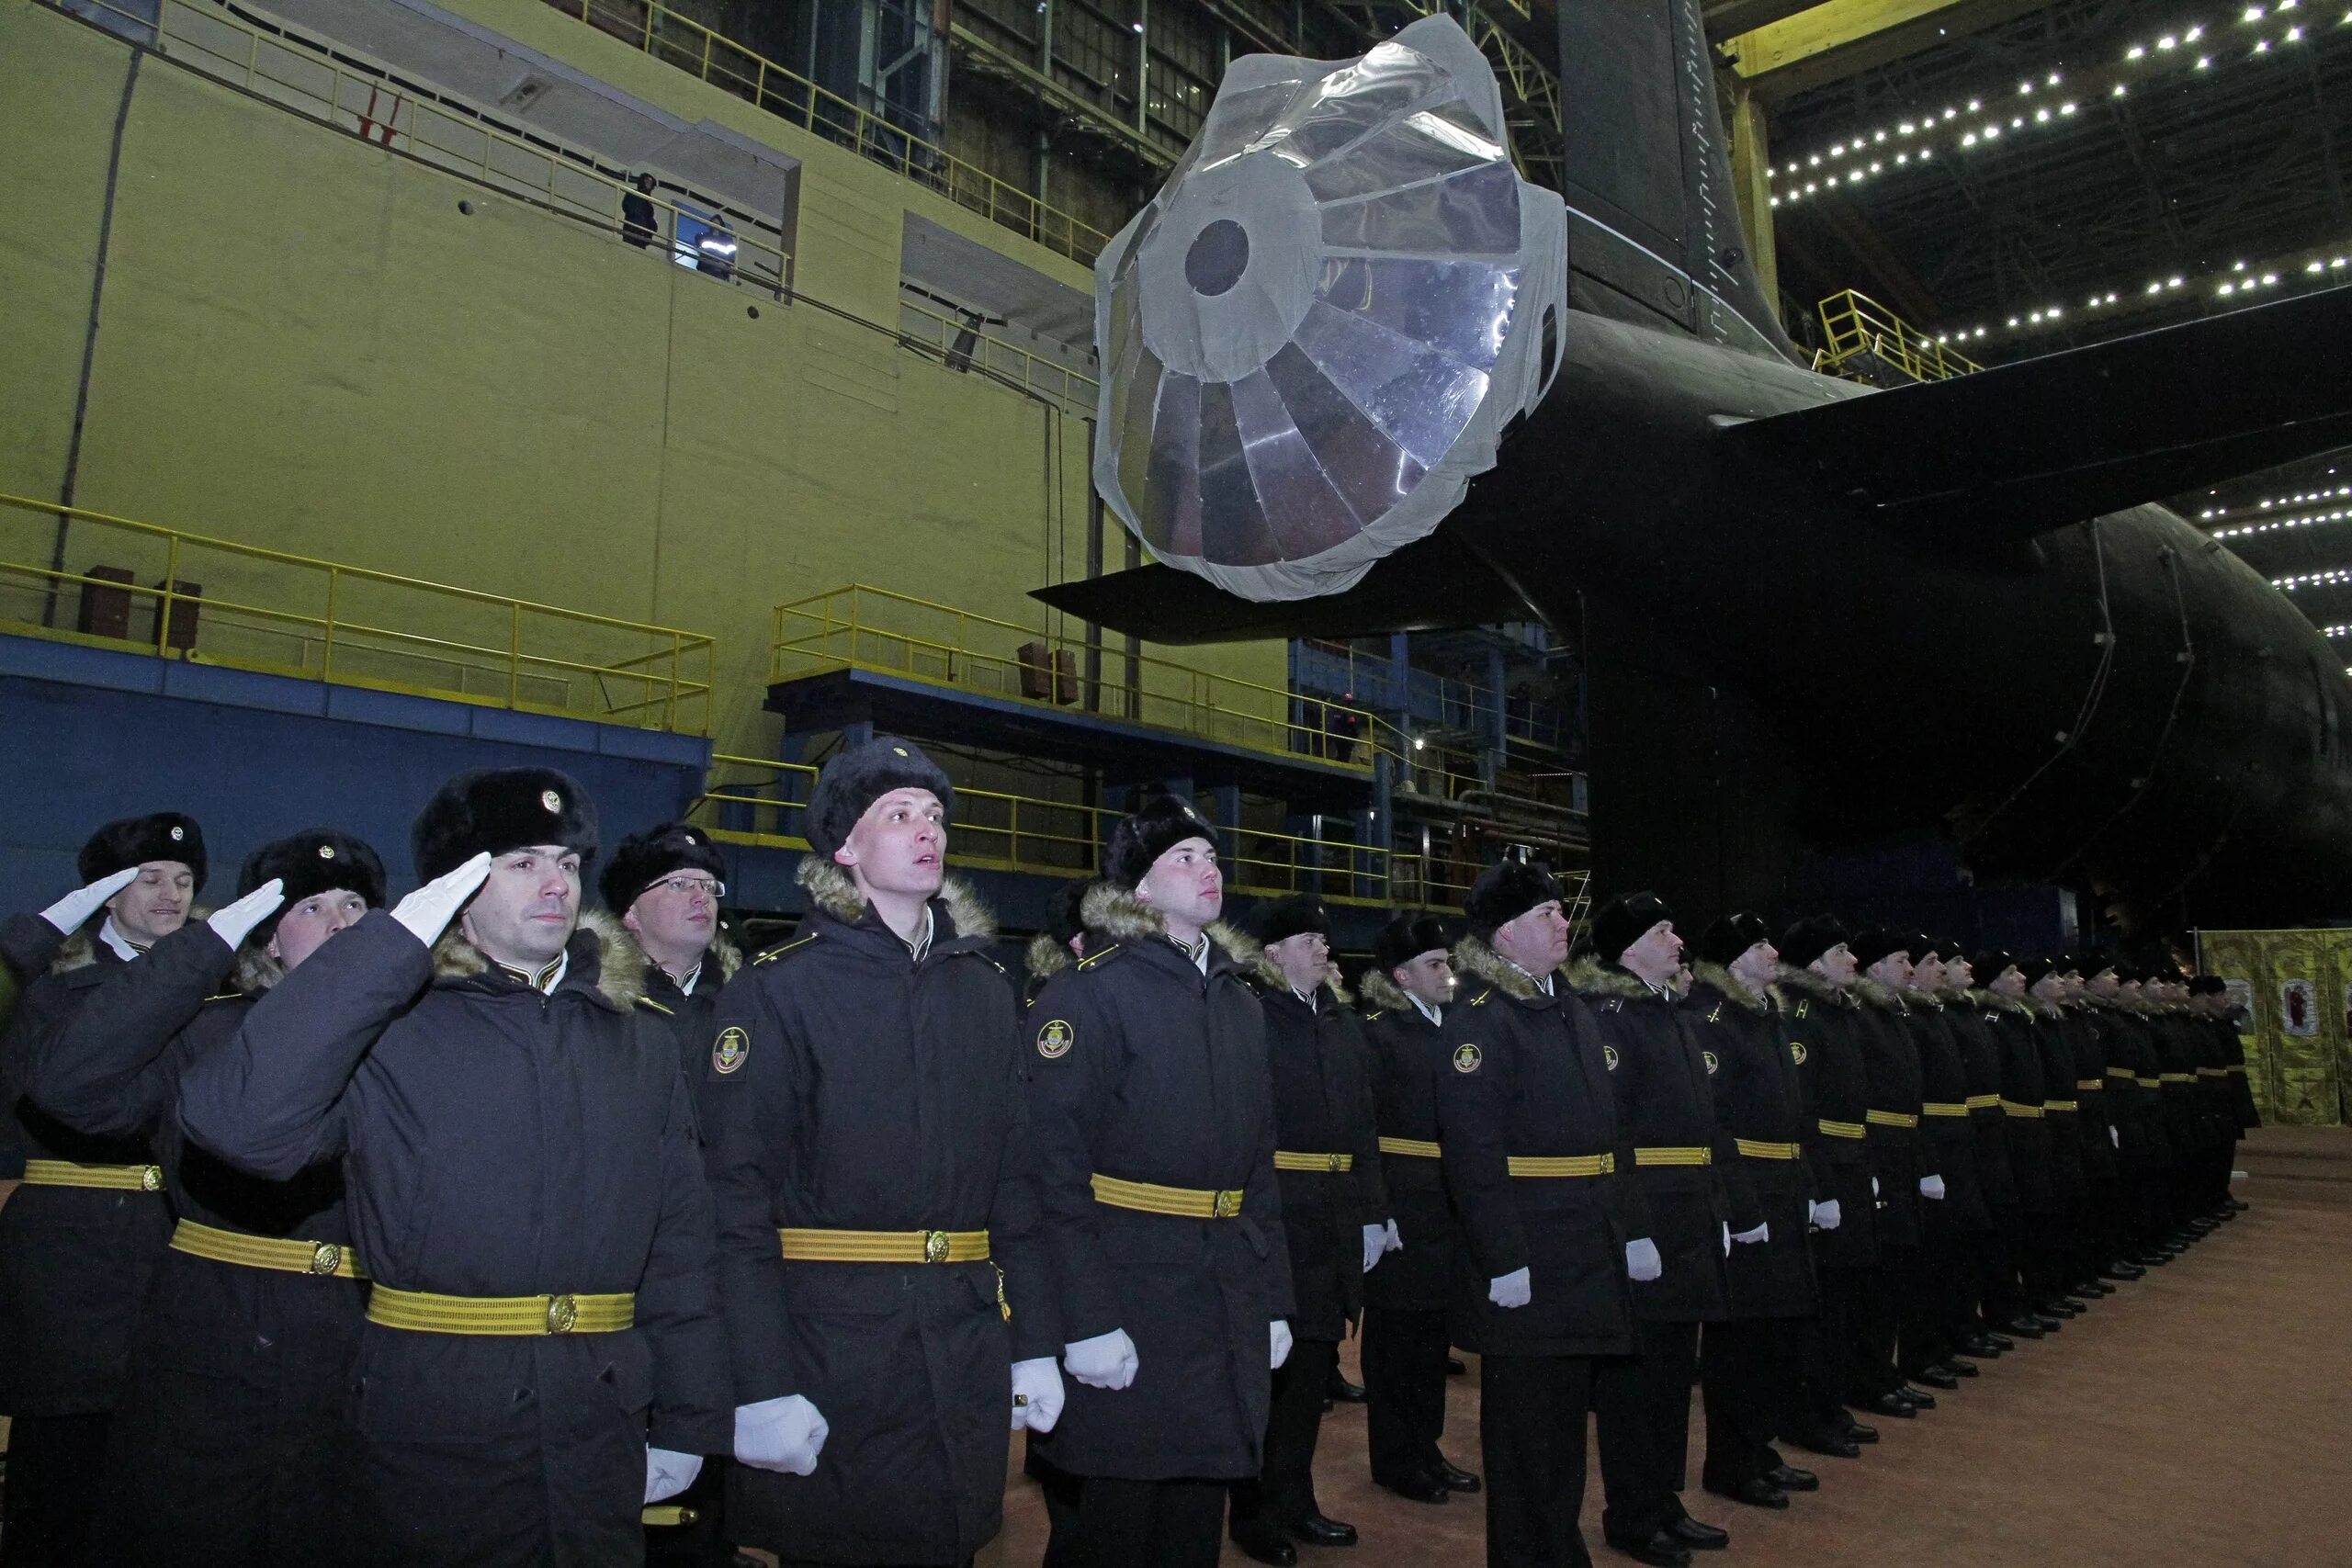 Производство атомных лодок. Новосибирск» (проект 885м, «ясень-м»). Атомная подводная лодка «Новосибирск» проекта 885м «ясень-м». Северодвинск завод подводных лодок Севмаш. АПЛ проекта 885м "Новосибирск".